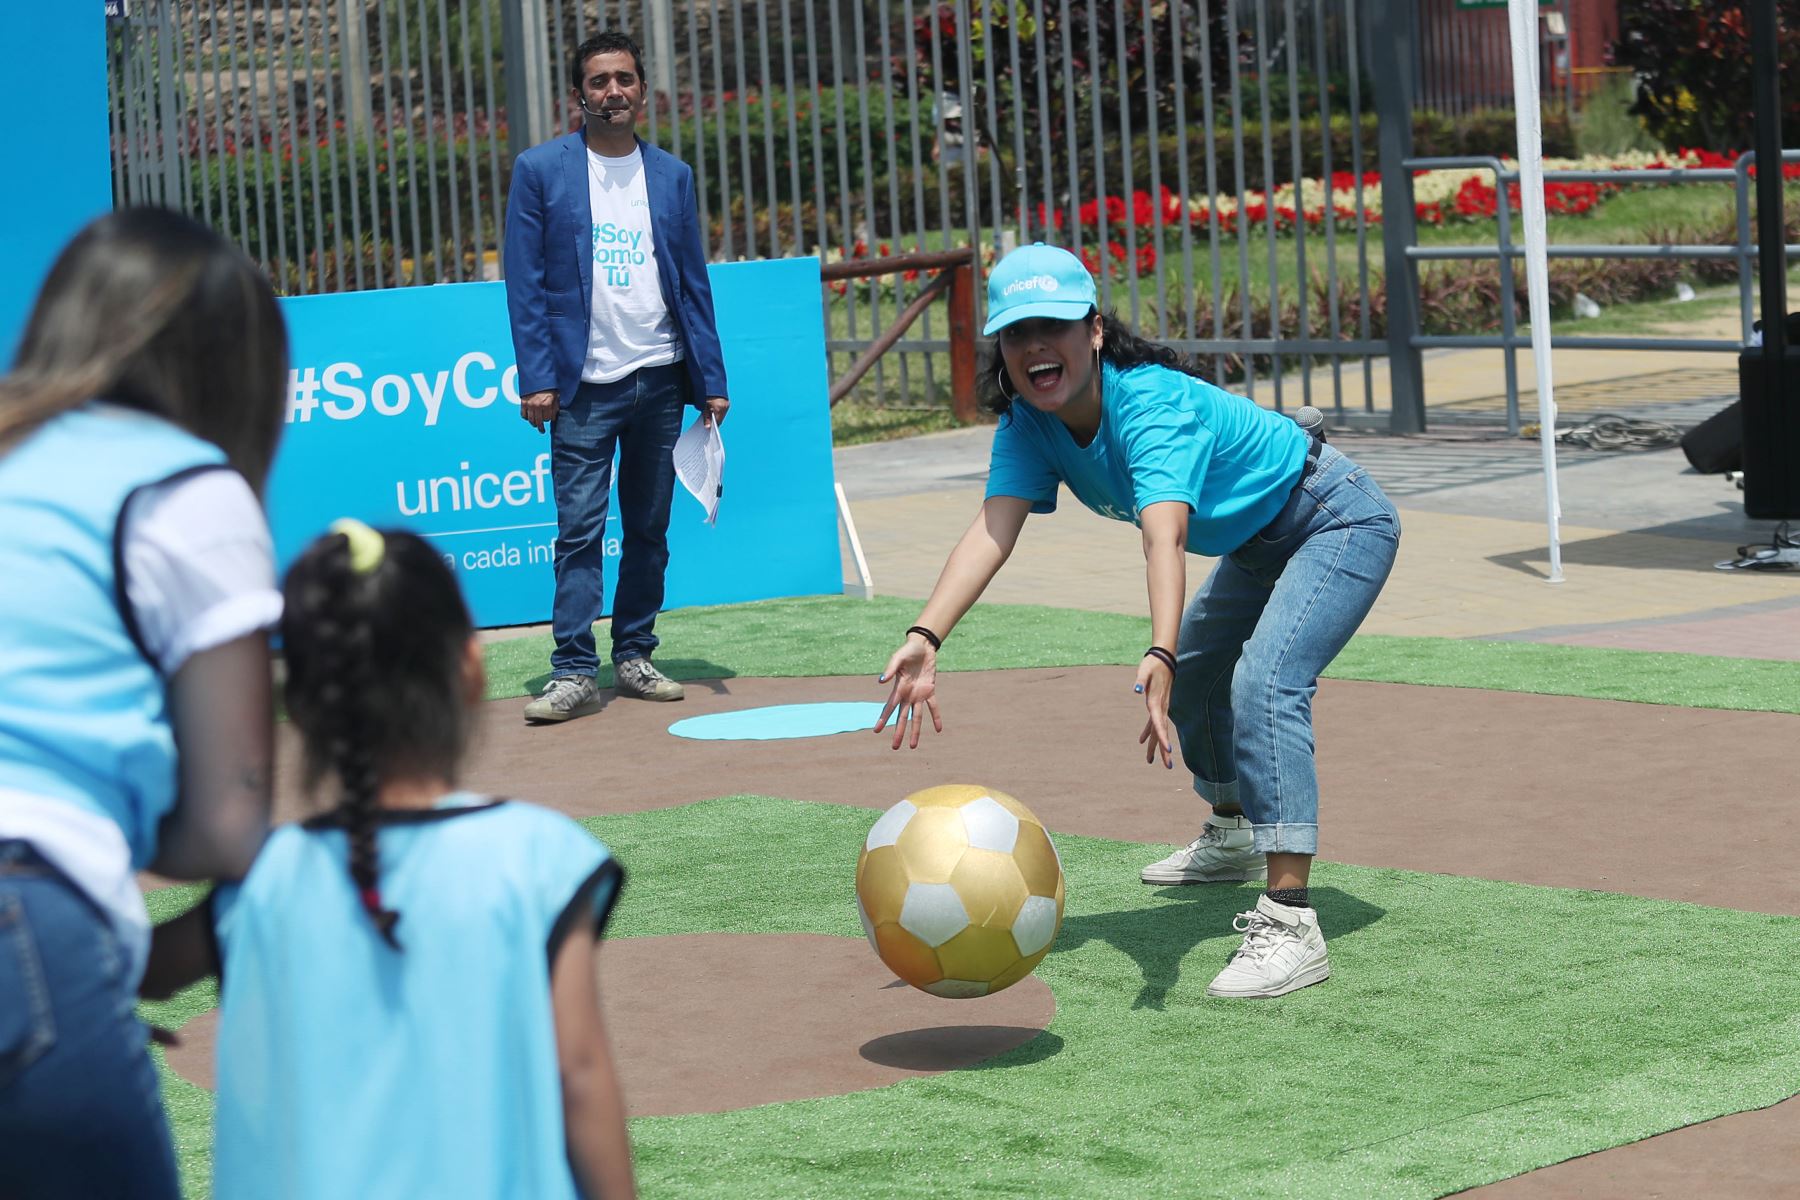 Unicef promociona campaña "Soy como tú" en una  jornada de juego que promueve la integración entre población peruana y migrante.
Foto: ANDINA/Ricardo Cuba